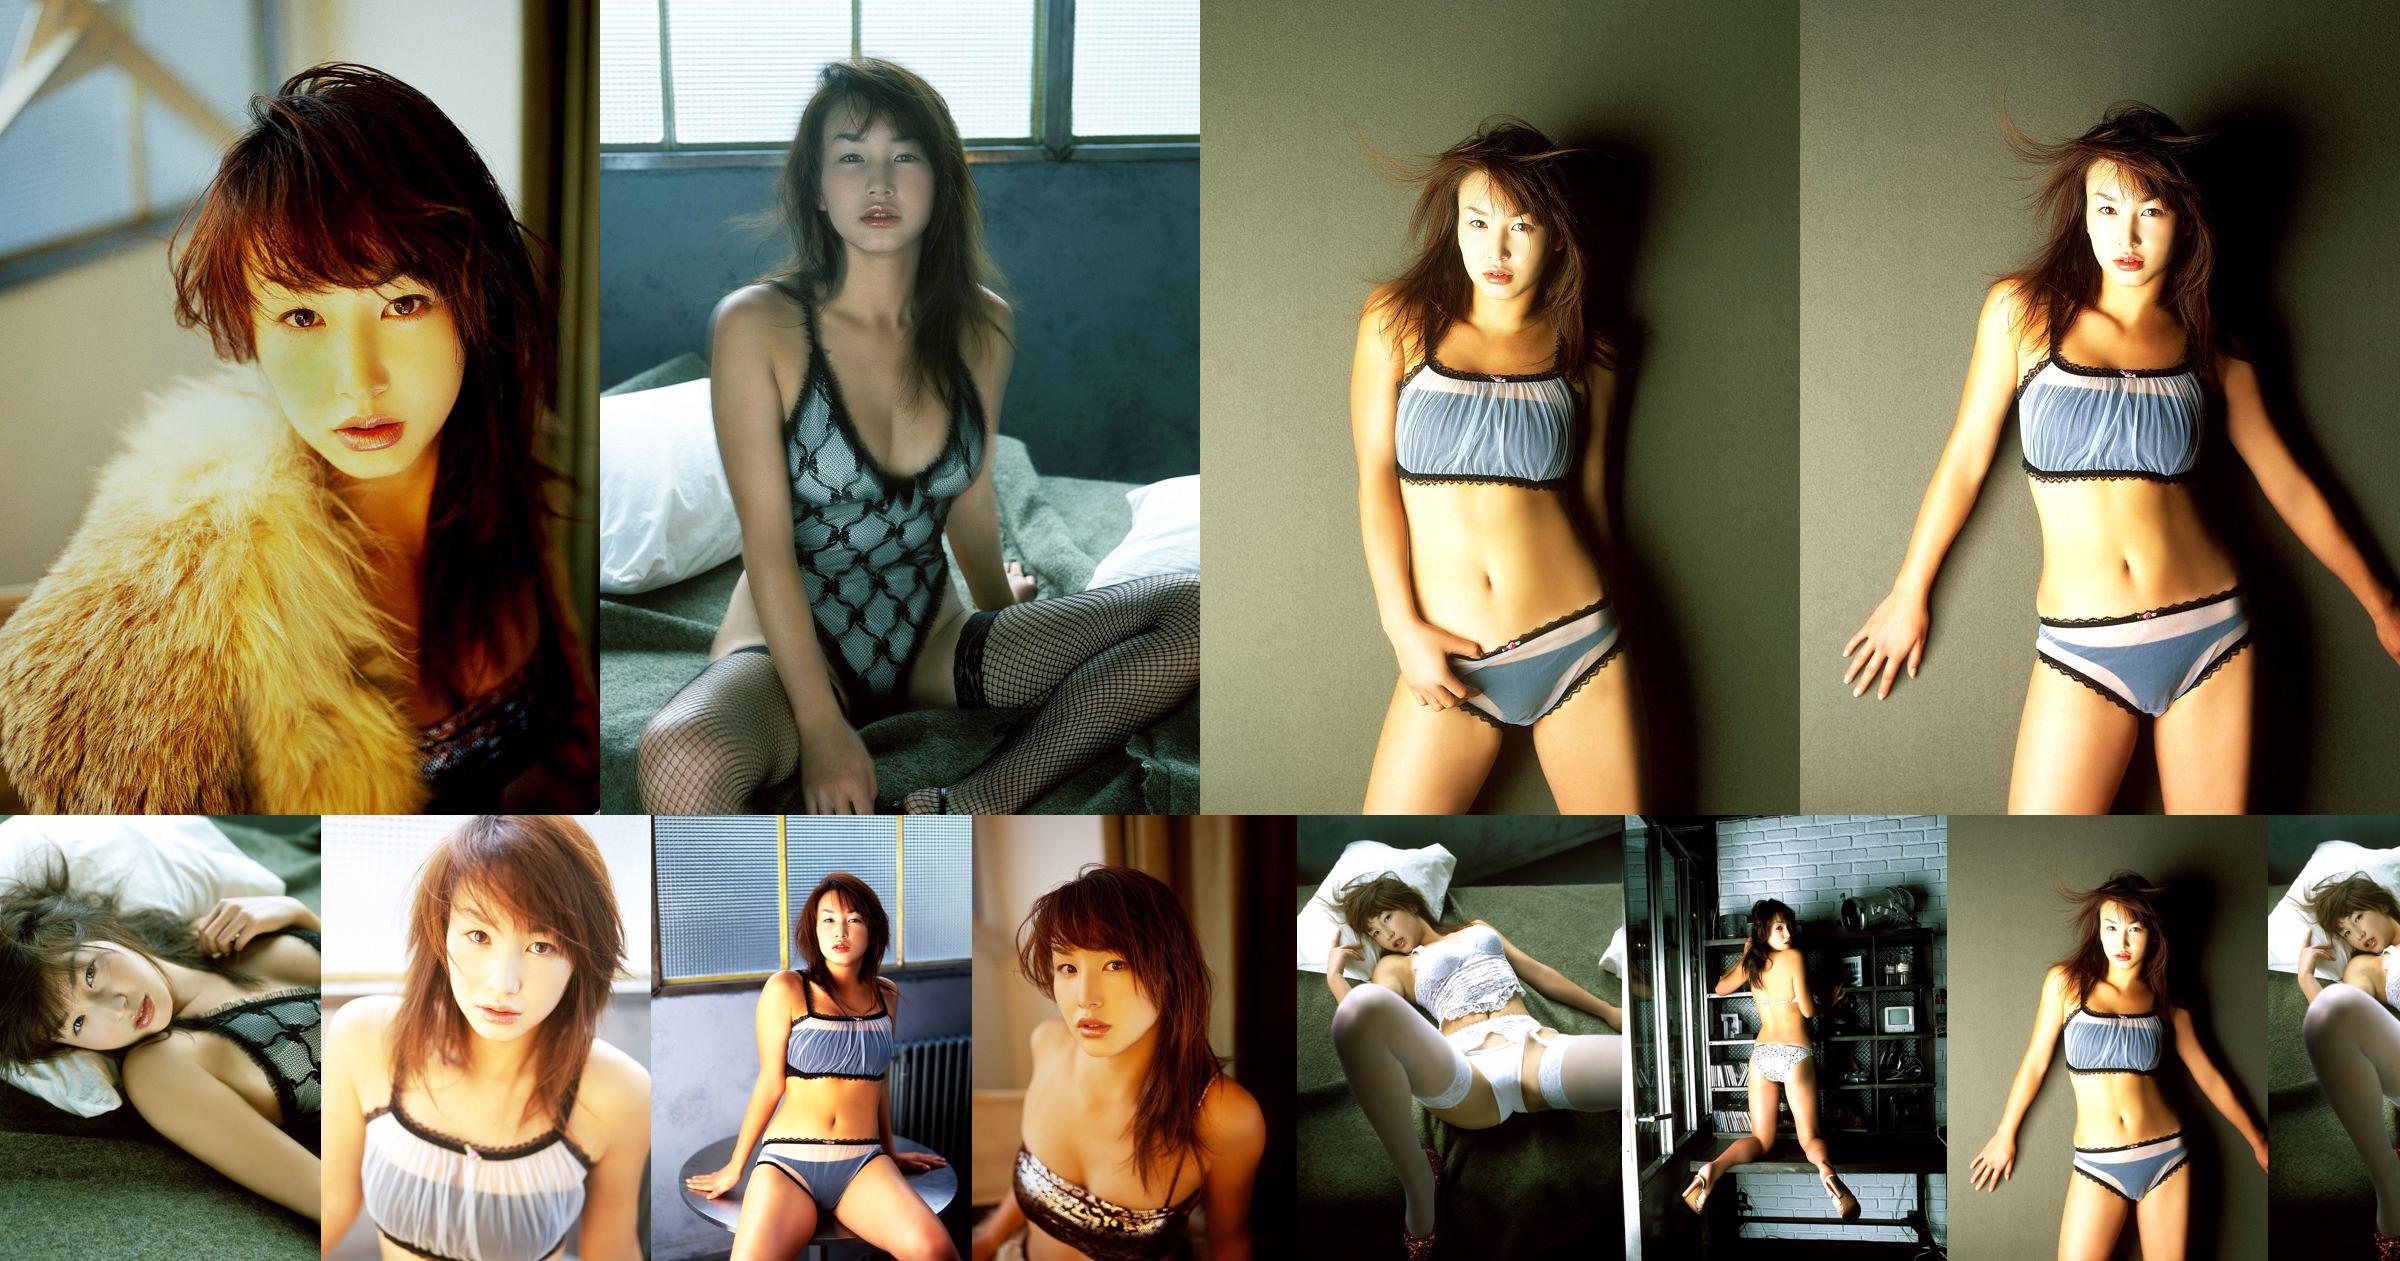 [X-City] Dokkiri Queen No.016 Momo Nakamura / Momo Nakamura Profile No.fd4a46 หน้า 1